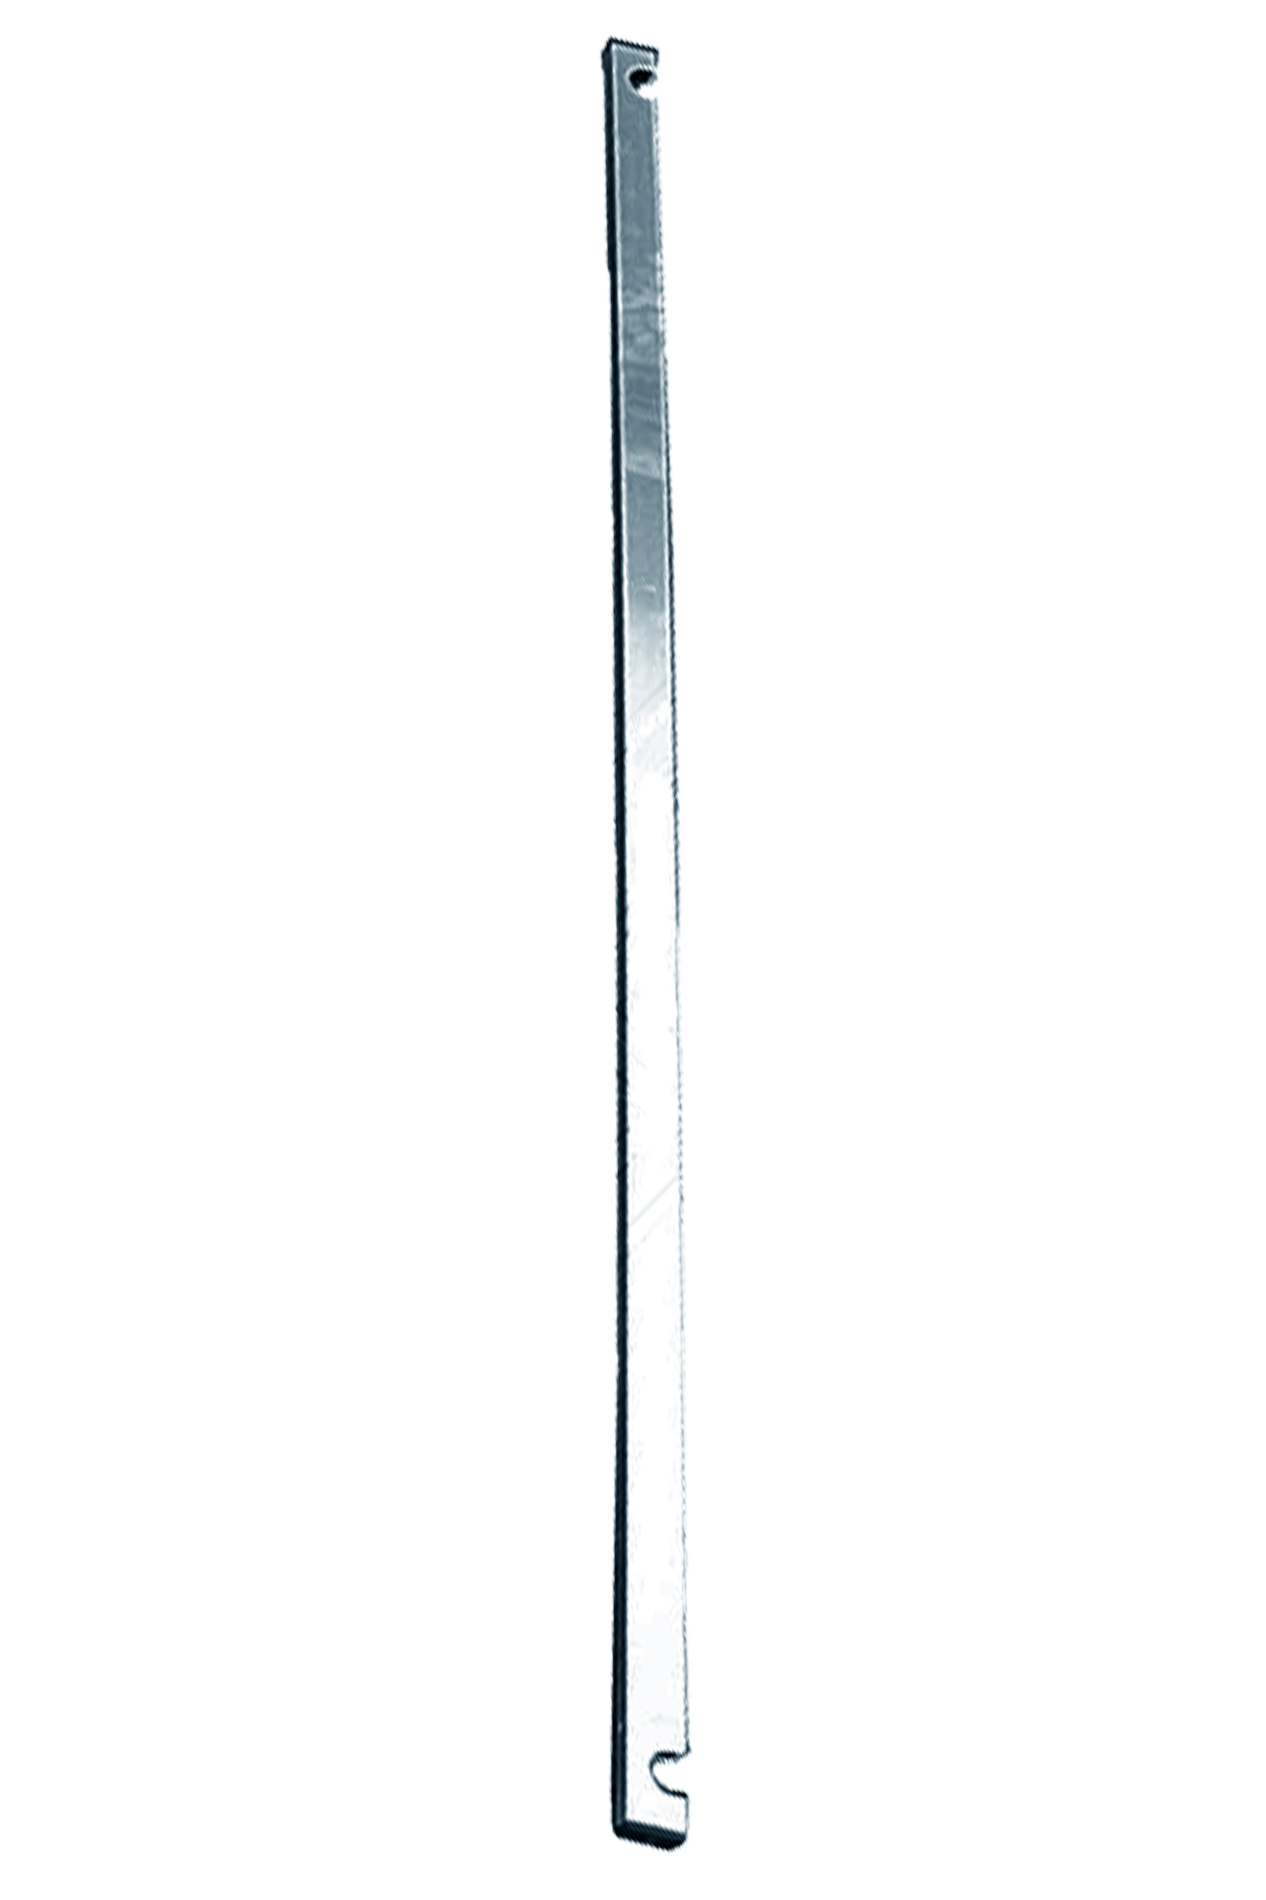 Дополнительное изображение Stabilo серии 1000 рабочая высота 7,2 м, размер площадки (3x0.75 м)